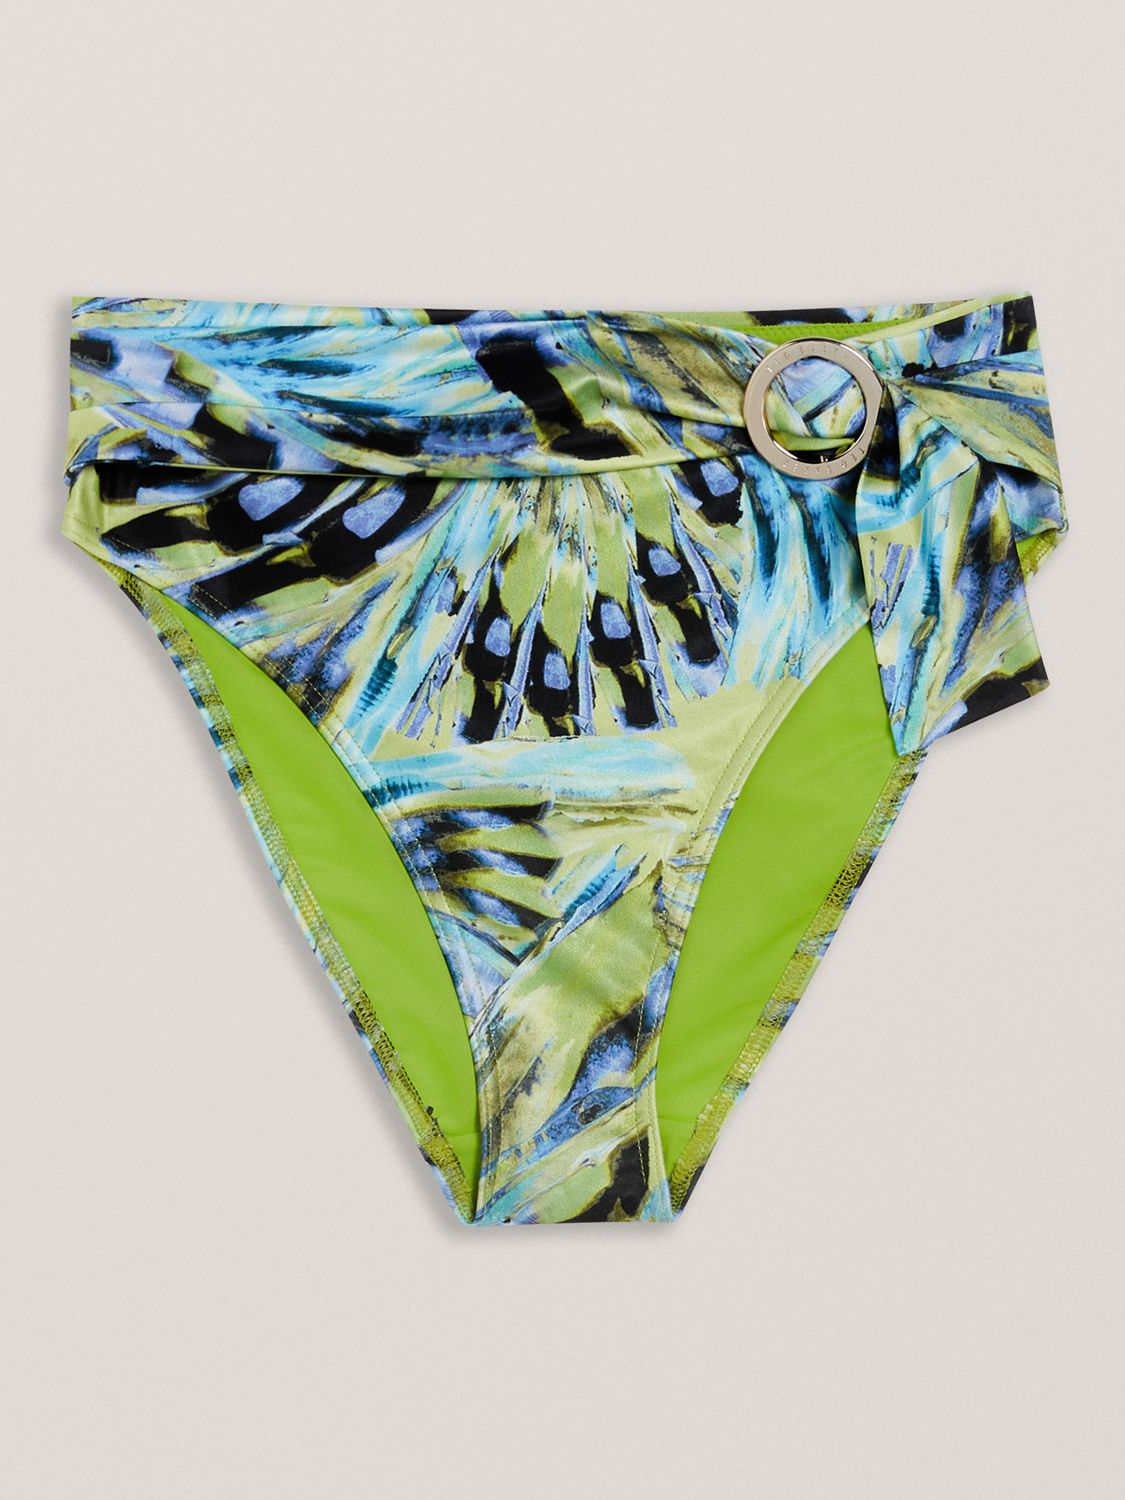 Ted Baker Chayrl Abstract print High Waisted Bikini Bottoms, Lime/Multi, 10